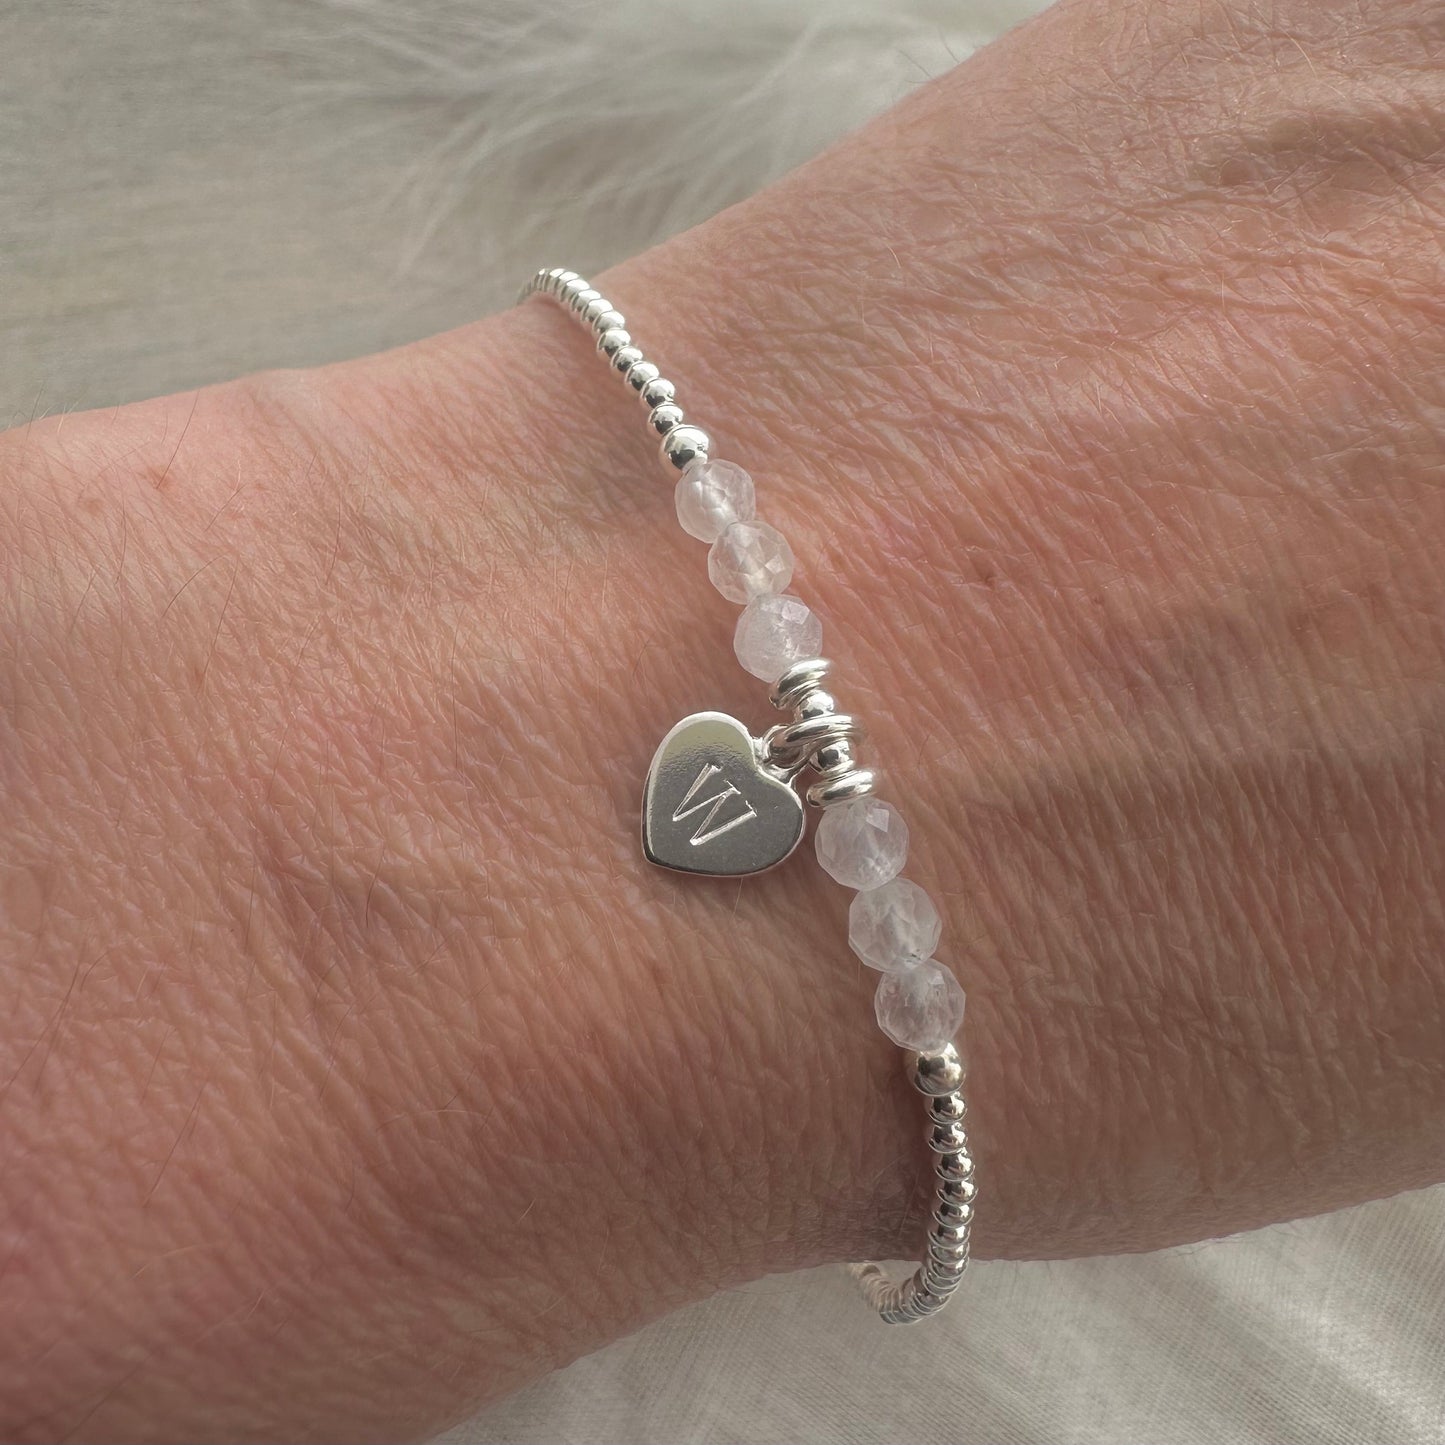 Personalised June Birthstone Bracelet, Dainty Moonstone Bracelet in Sterling Silver